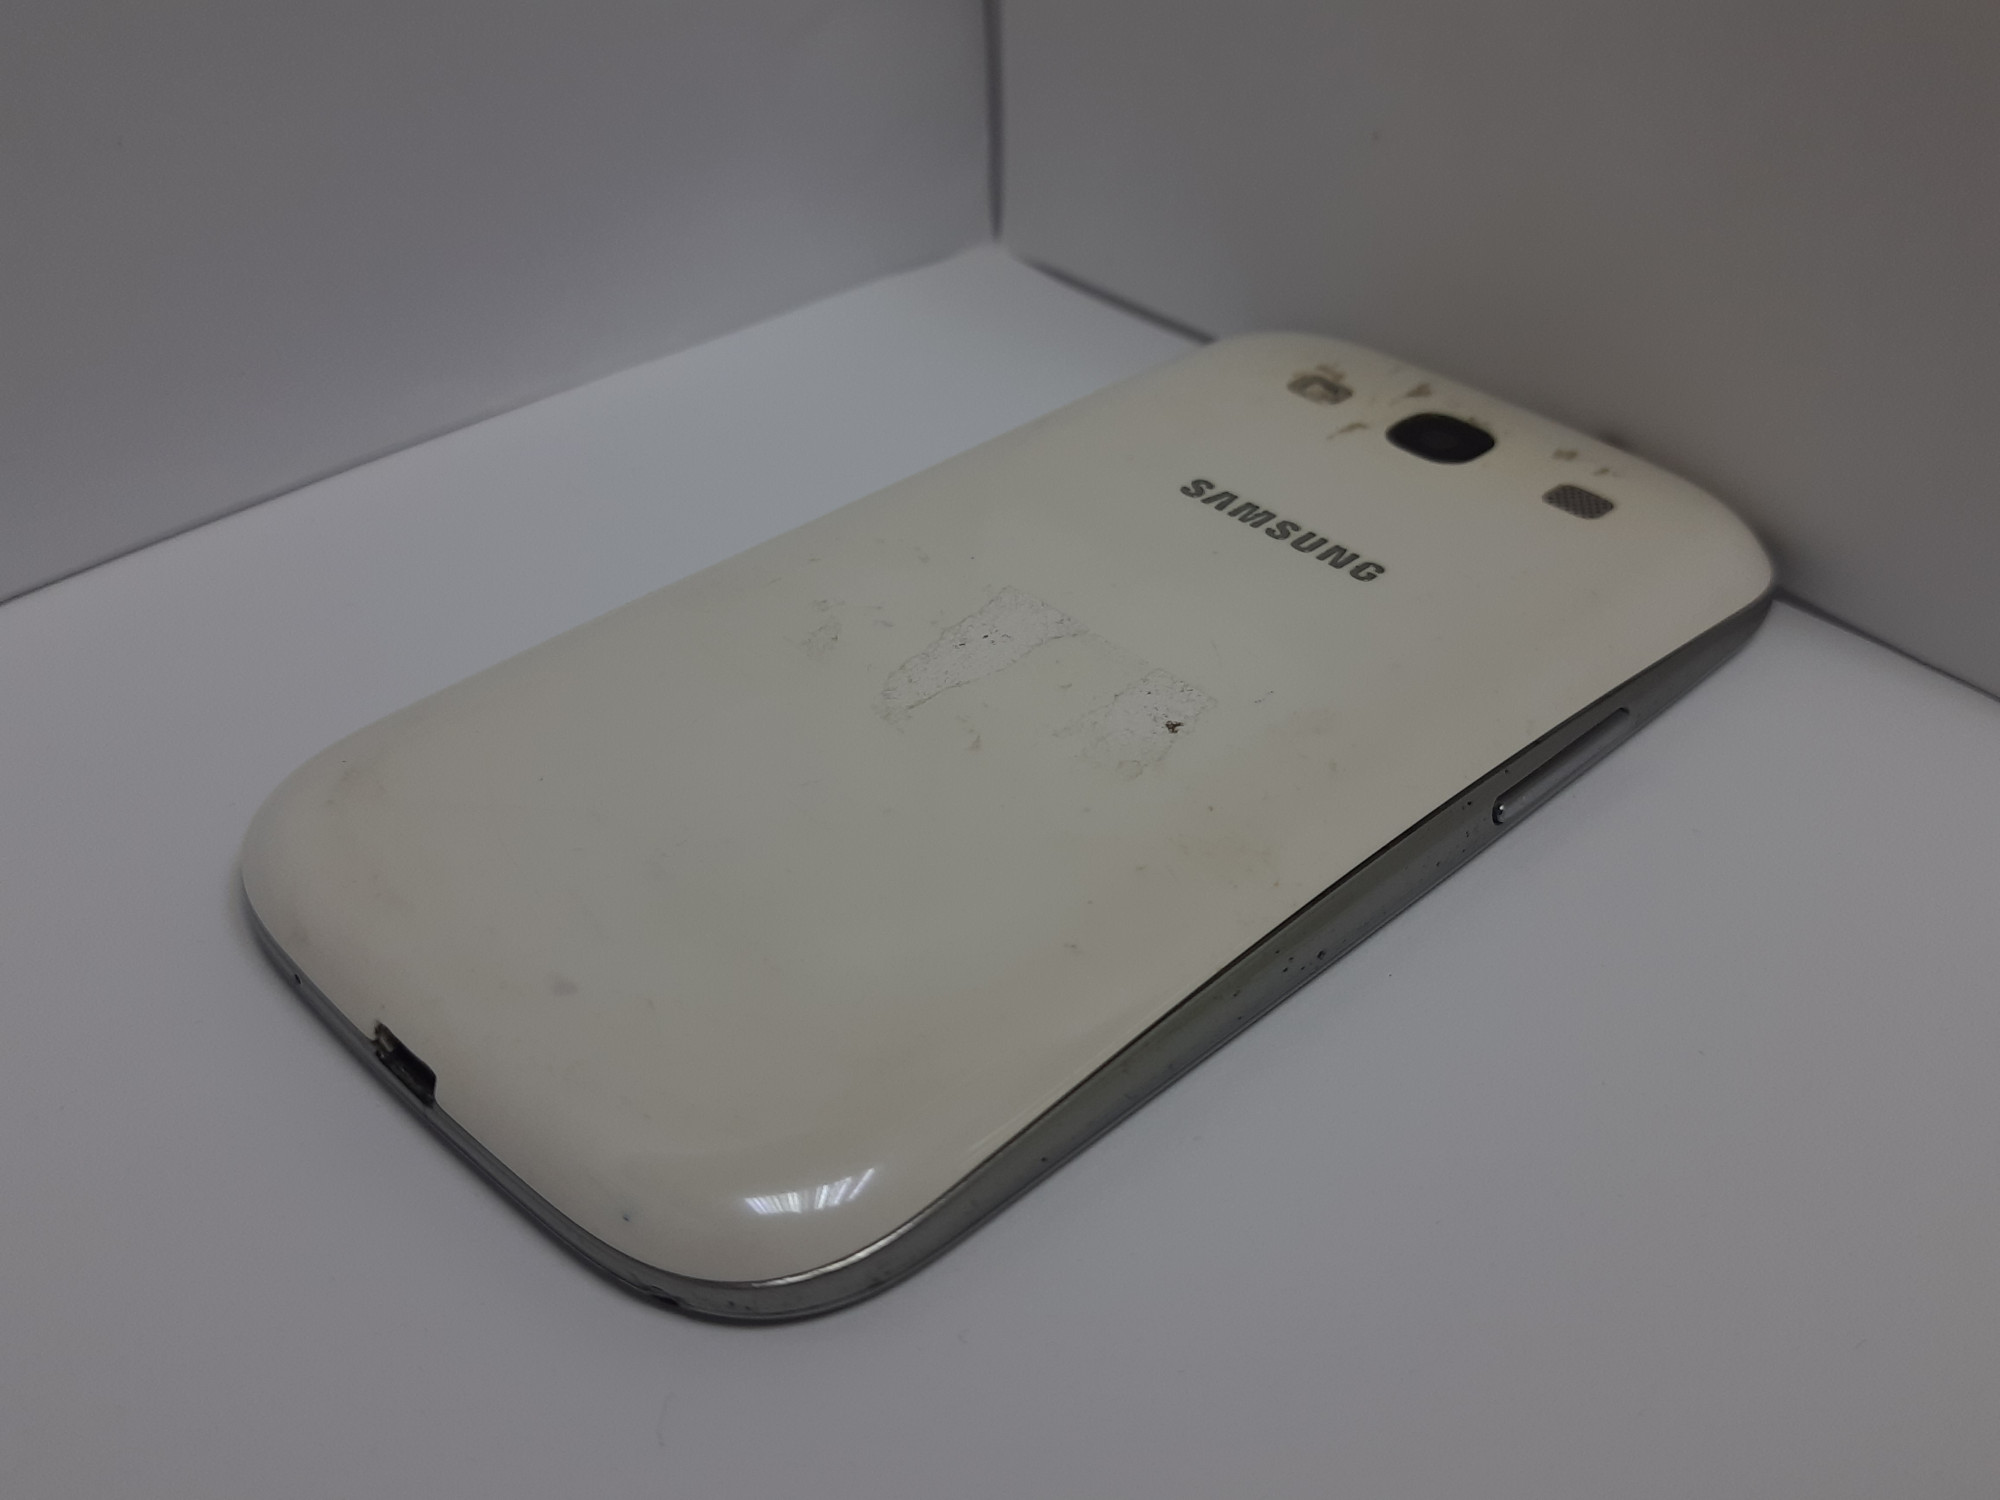 Samsung Galaxy S3 (GT-I9300) 1/16Gb 3